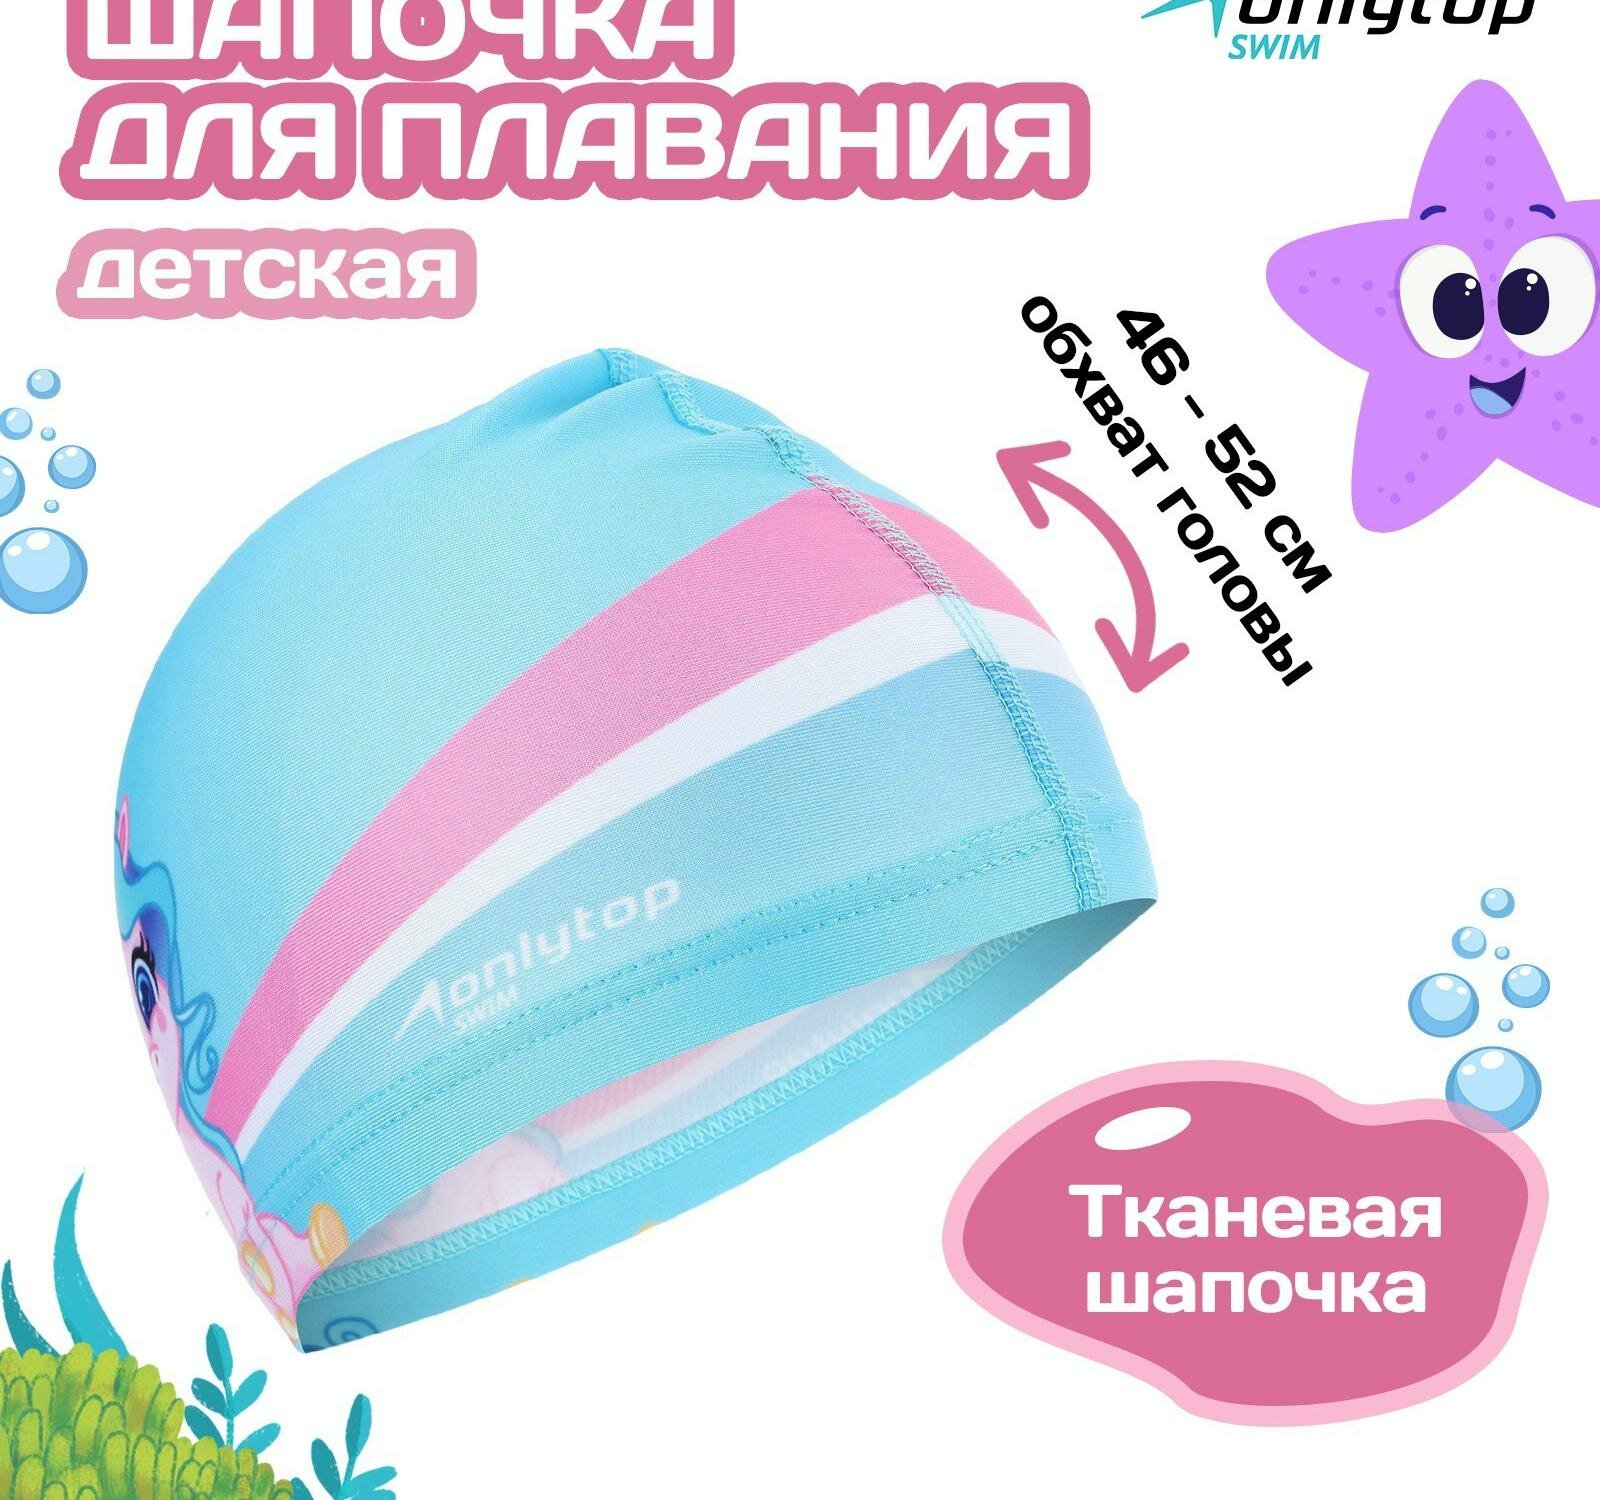 Шапочка для плавания детская ONLYTOP "Единорожка", тканевая, обхват 46-52 см